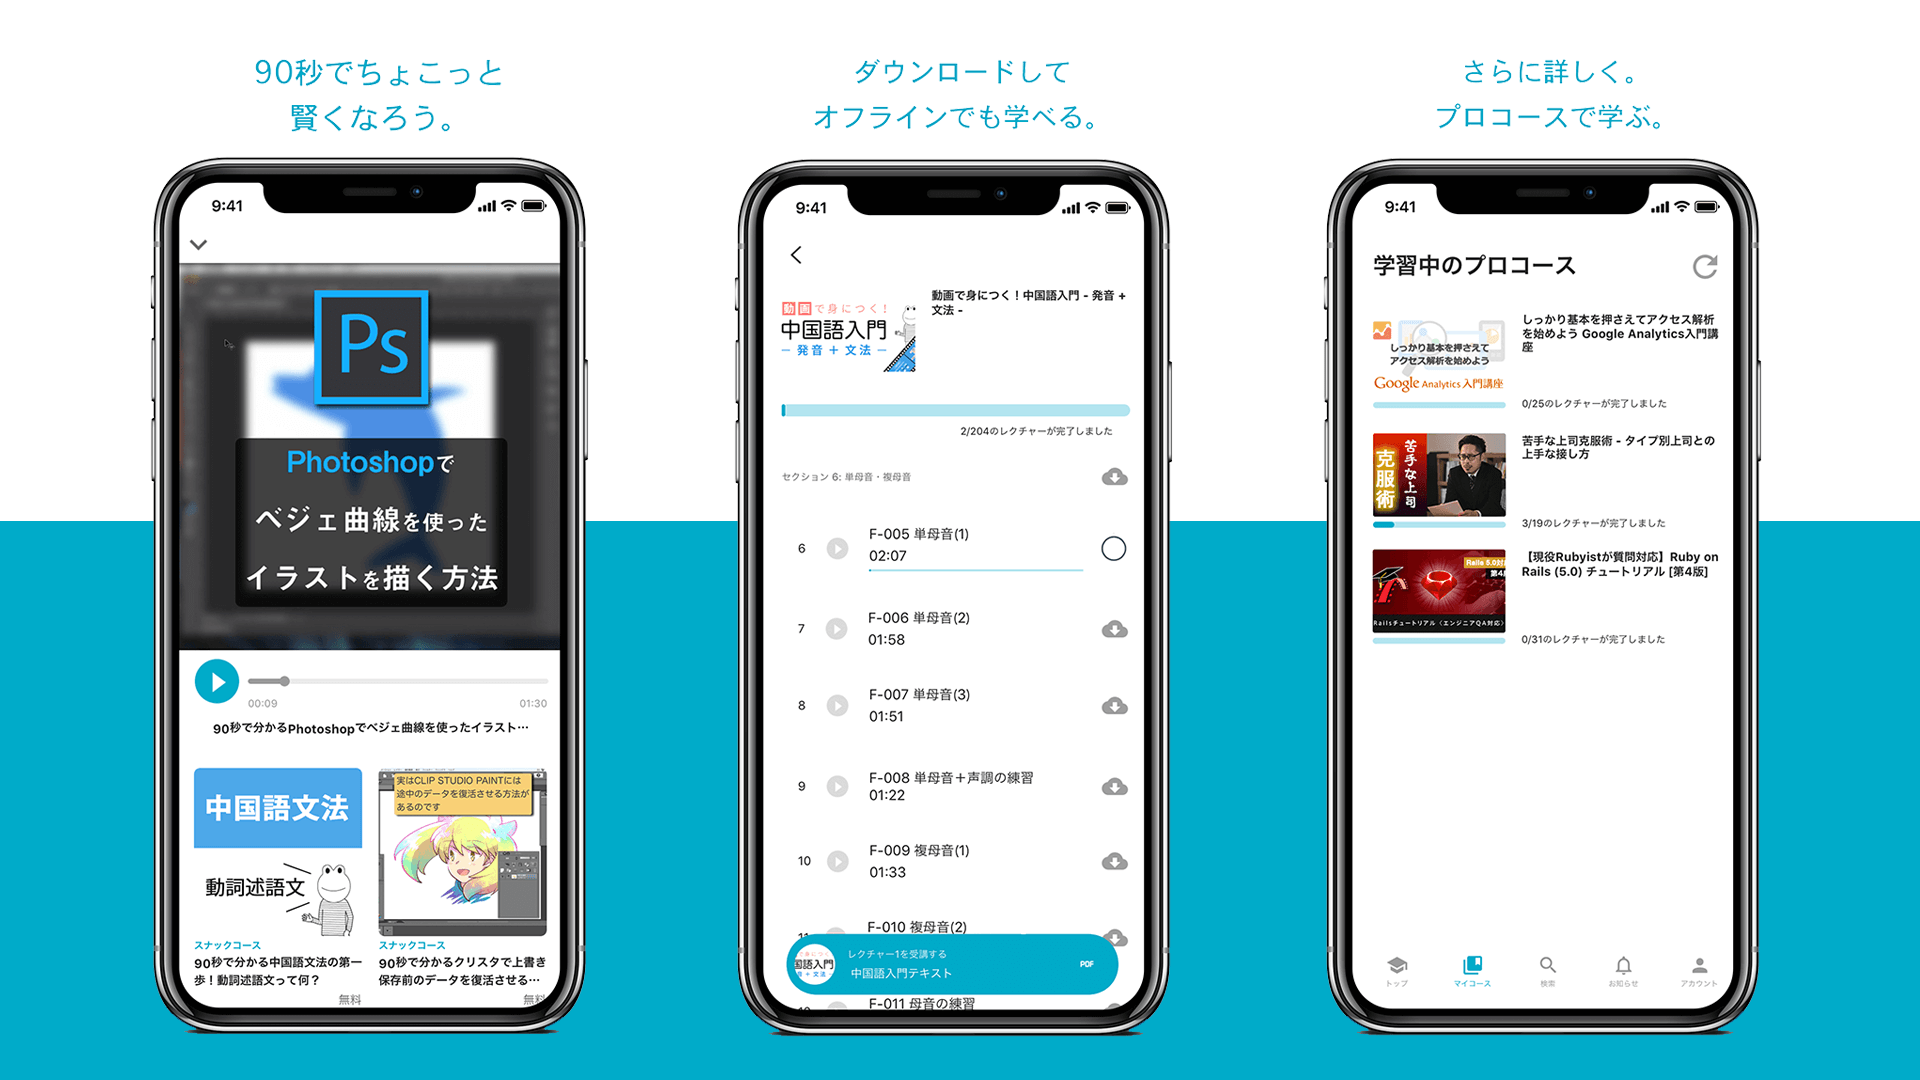 ShareWisバージョン6系アプリの紹介画像 iPhone X上で動作するShareWis iOSアプリのスクリーンショットが横に3つ並べられている